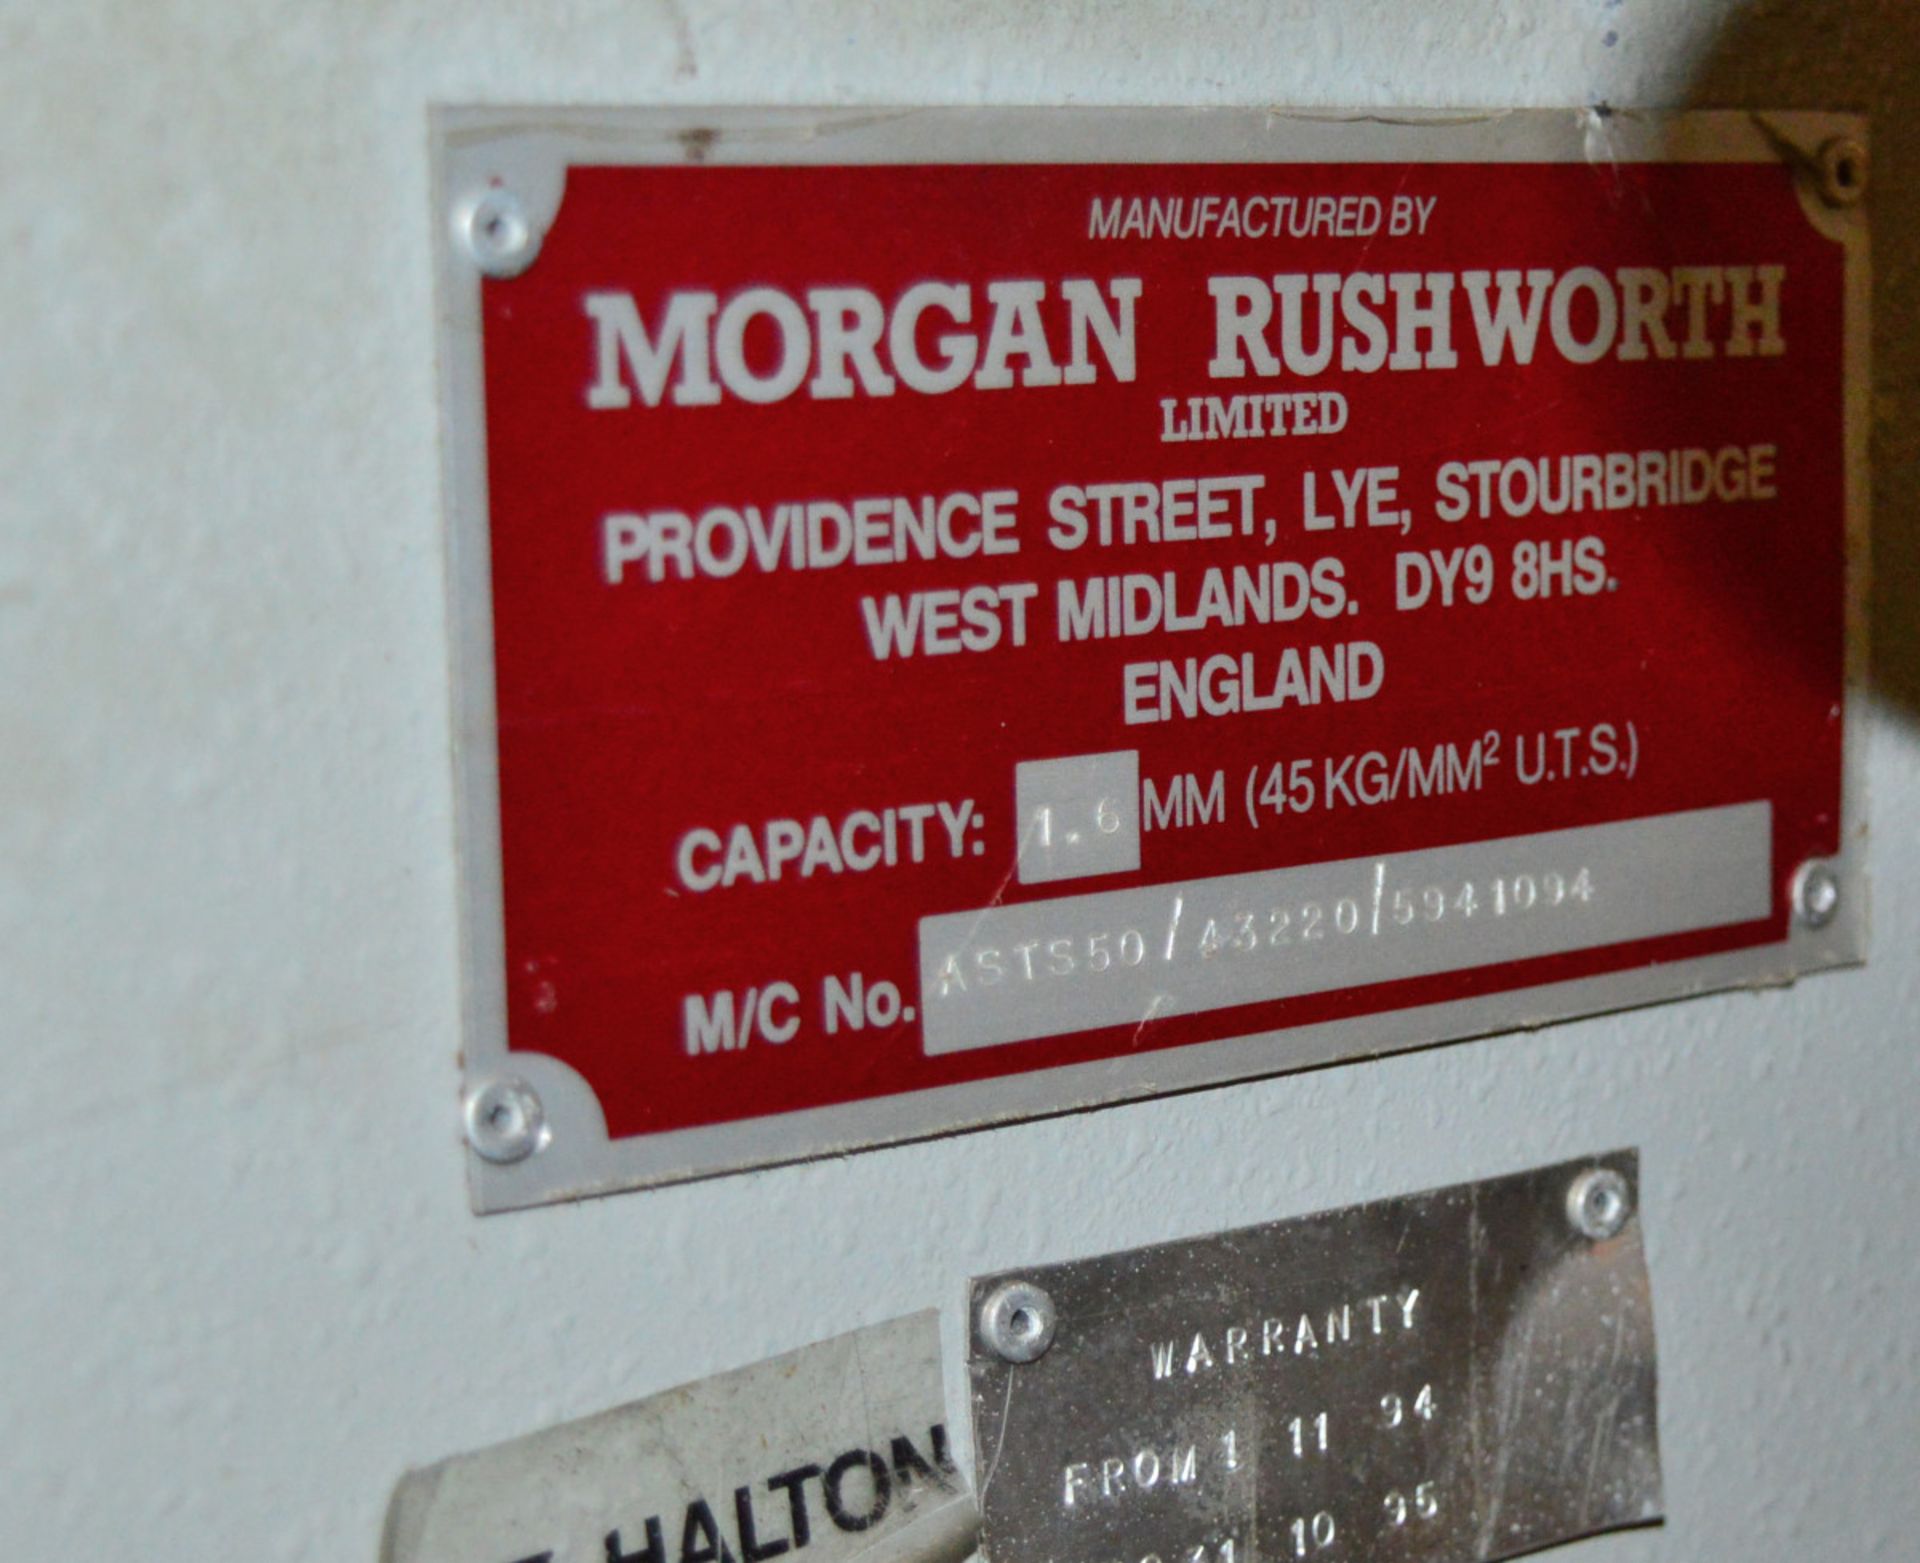 Morgan Rushworth Manual Guillotine Machine AST550/43220/5941094. Capacity 1.6mm. - Image 2 of 3